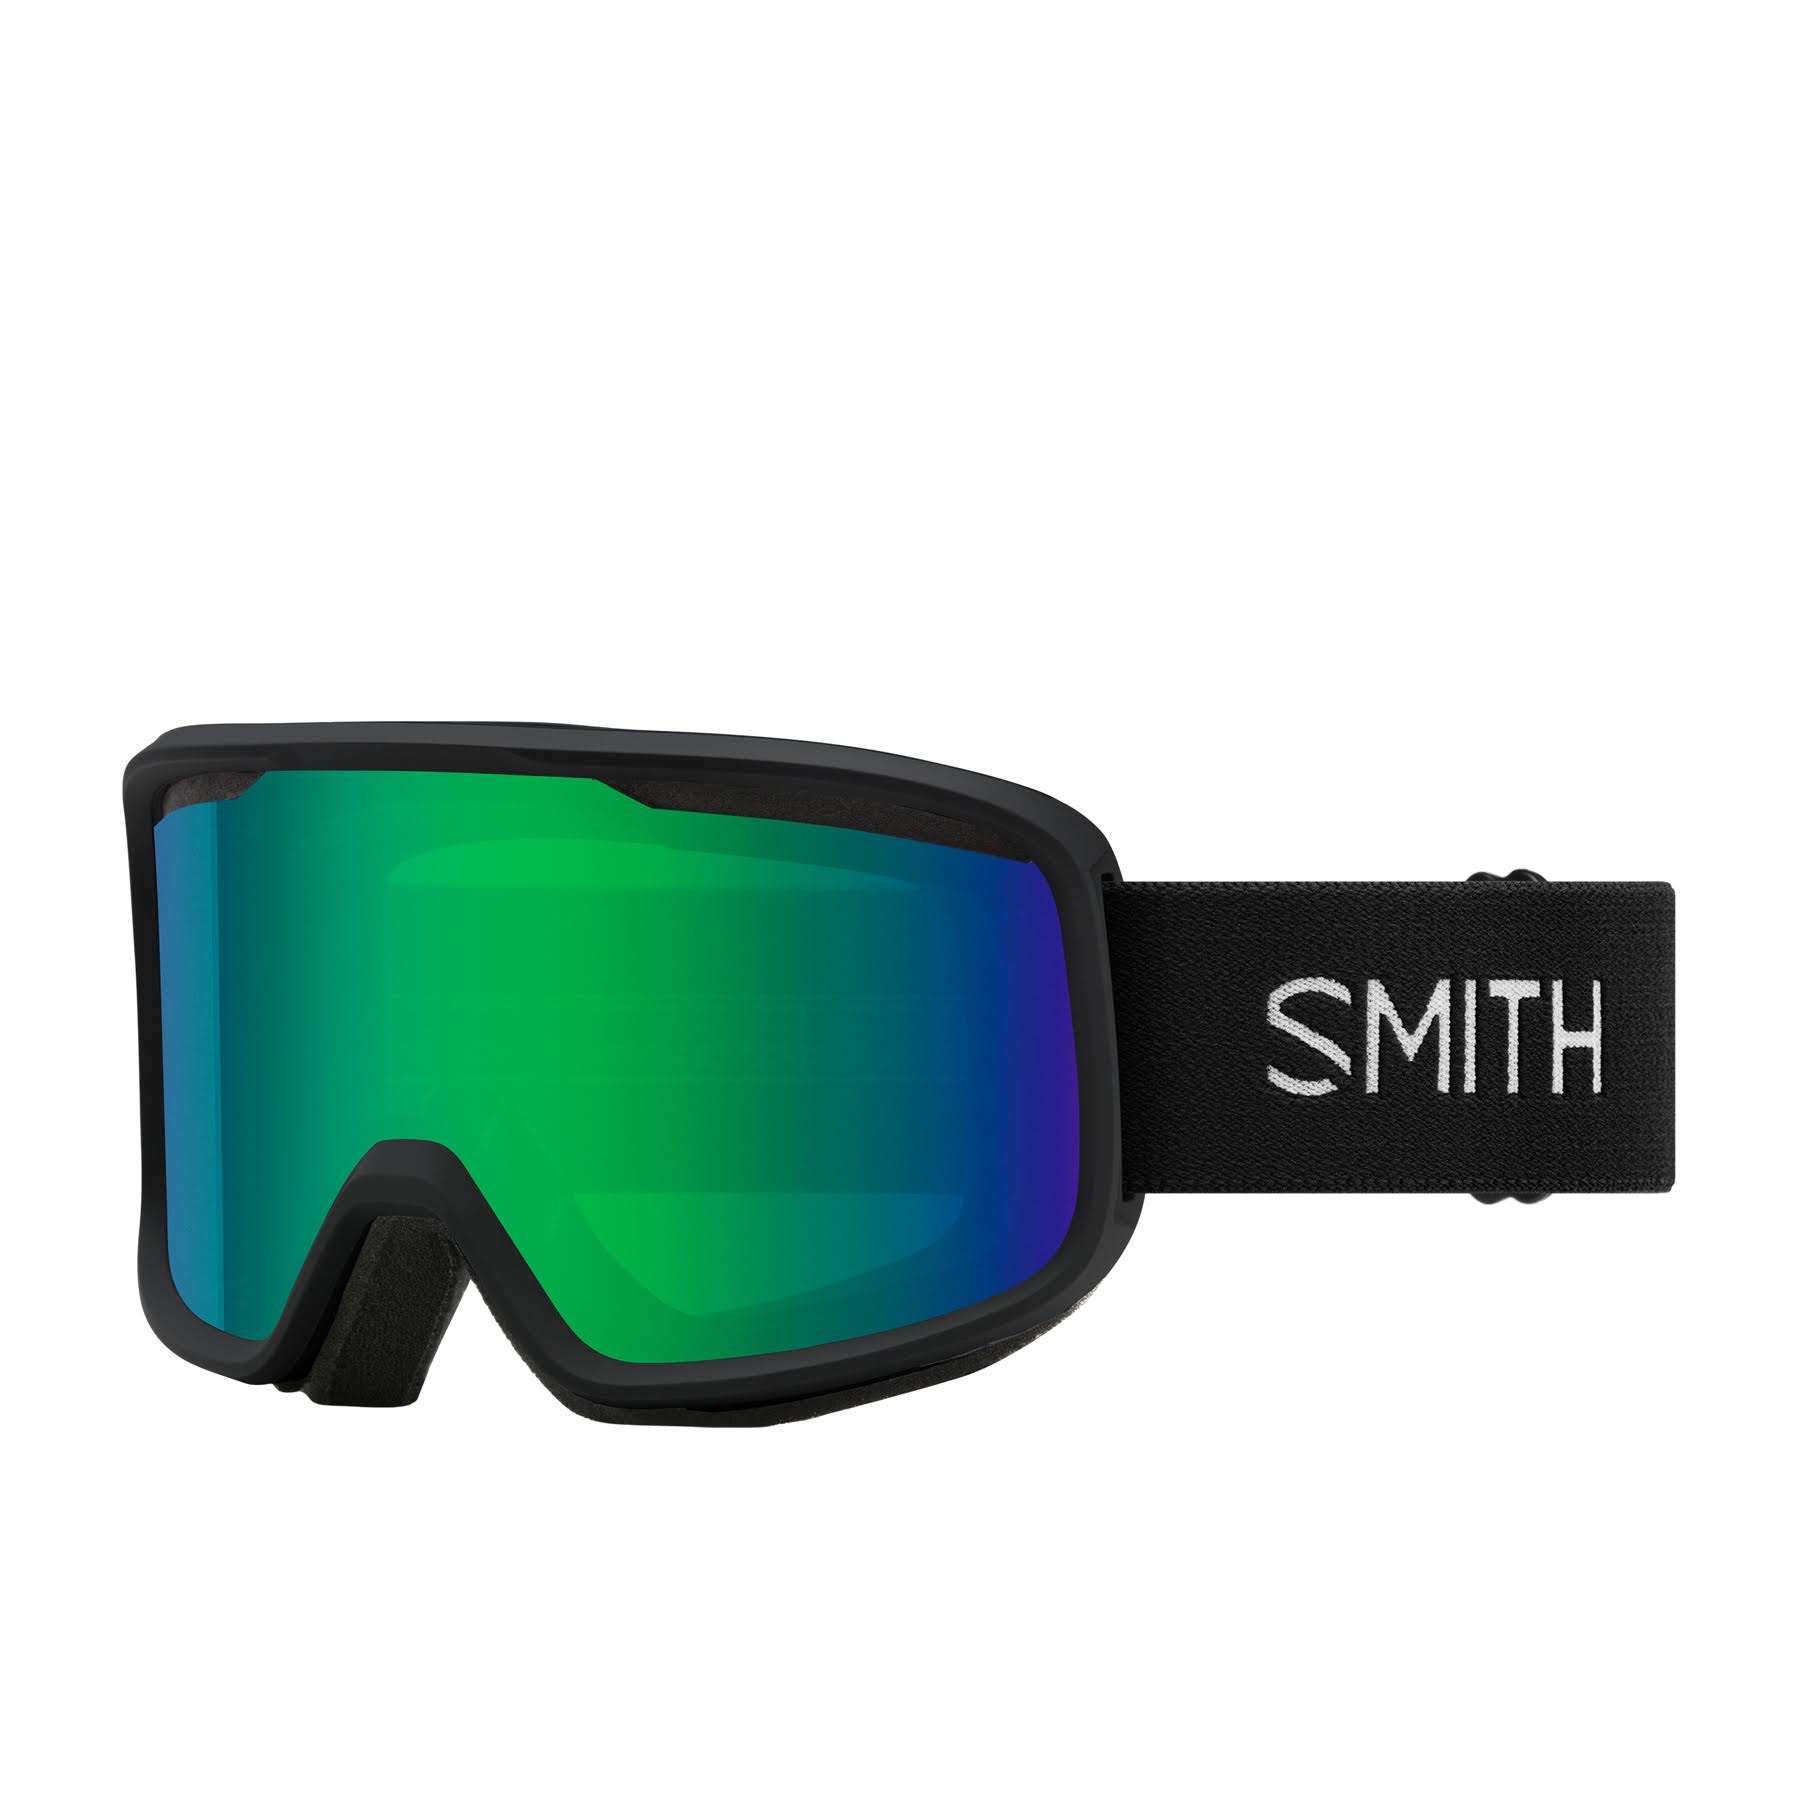 Smith Frontier Goggles, Black, Green Sol-X Mirror, M004292QJ99C5